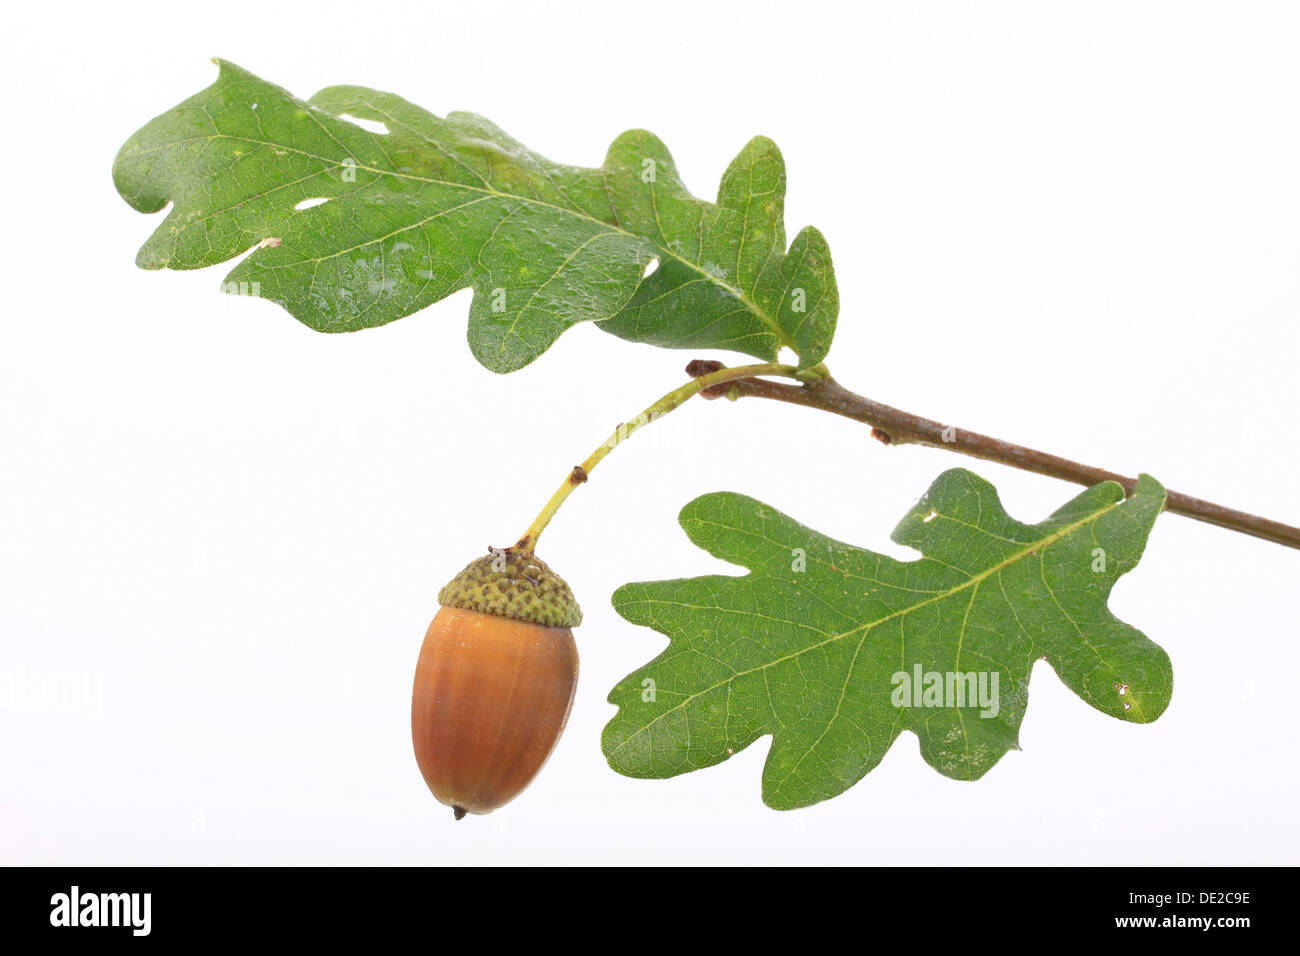 Un gland avec feuilles de chêne, chêne pédonculé (Quercus robur) Banque D'Images